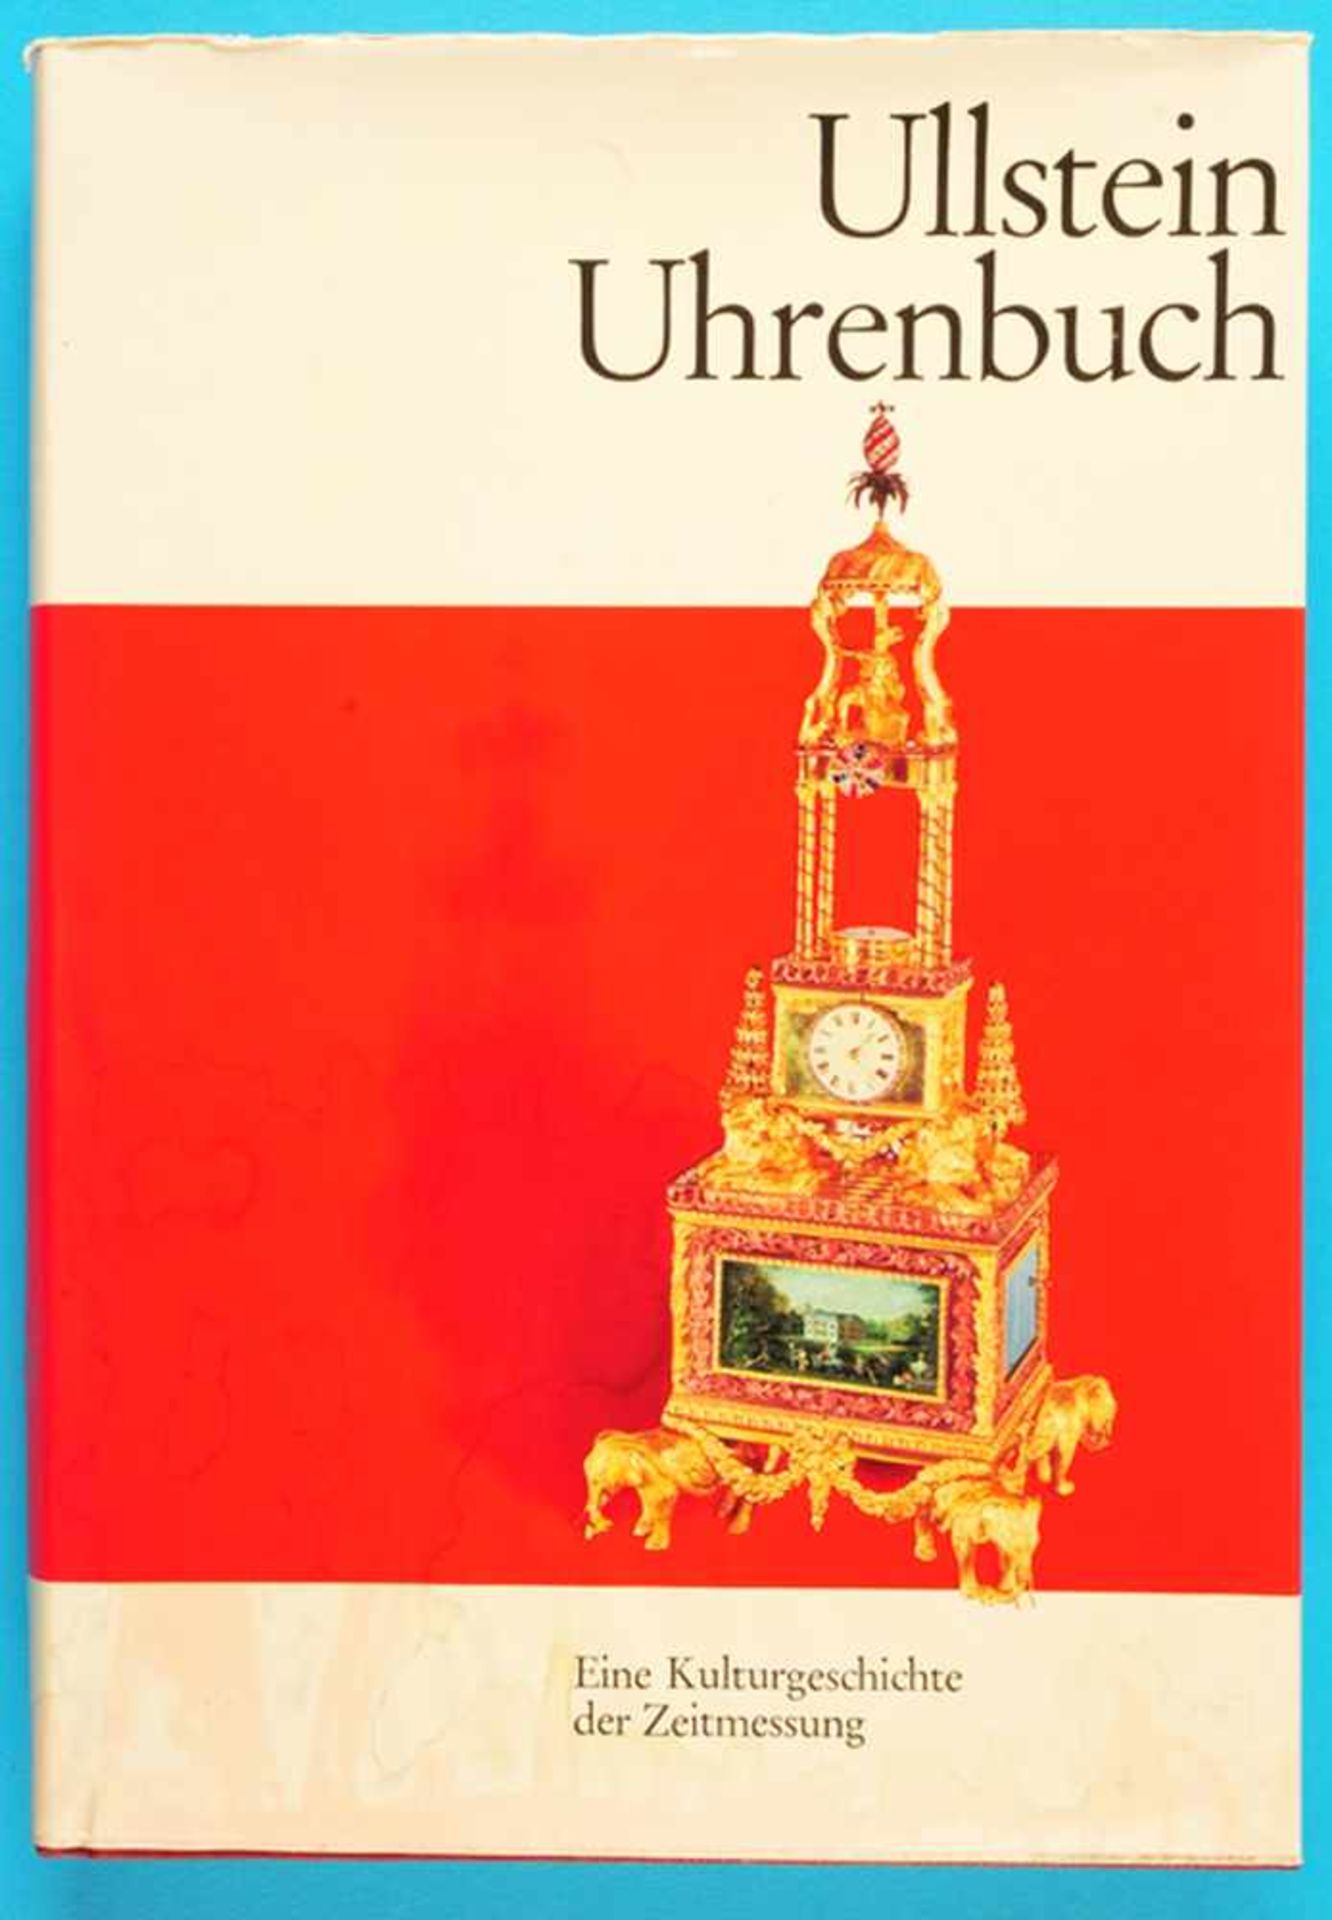 Jürgen Abeler, Ullstein Uhrenbuch - Eine Kulturgeschichte der Zeitmessung, 1975, 324 Seiten mit